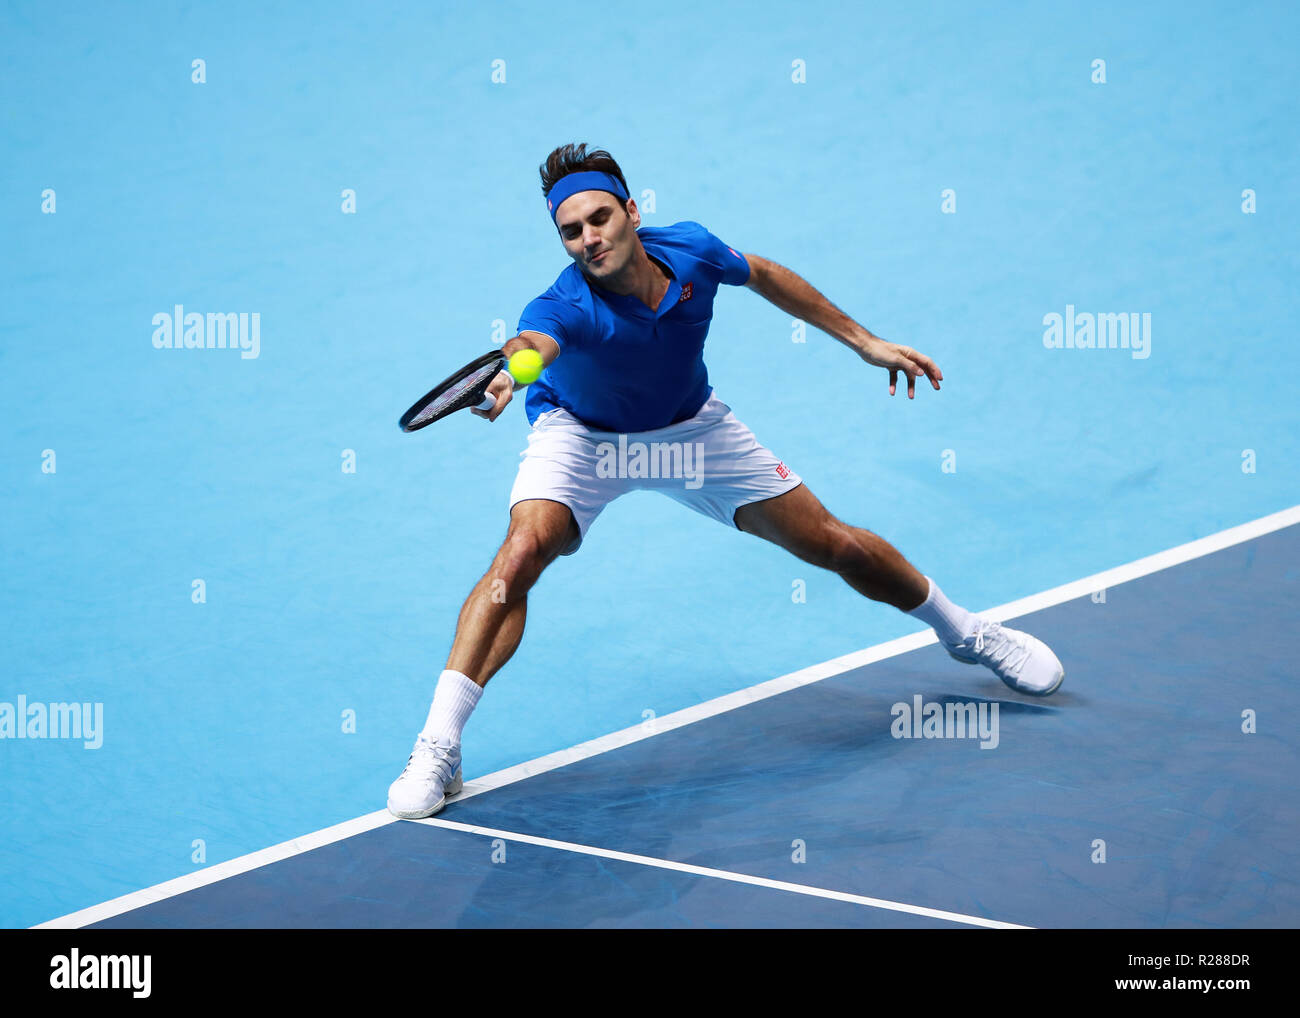 17 novembre 2018, O2 Arena, London, England ; Nitto ATP Tennis Finale, Roger Federer (SUI) avec un coup droit tourné dans son jeu contre Alexander Zverev (GER) Banque D'Images